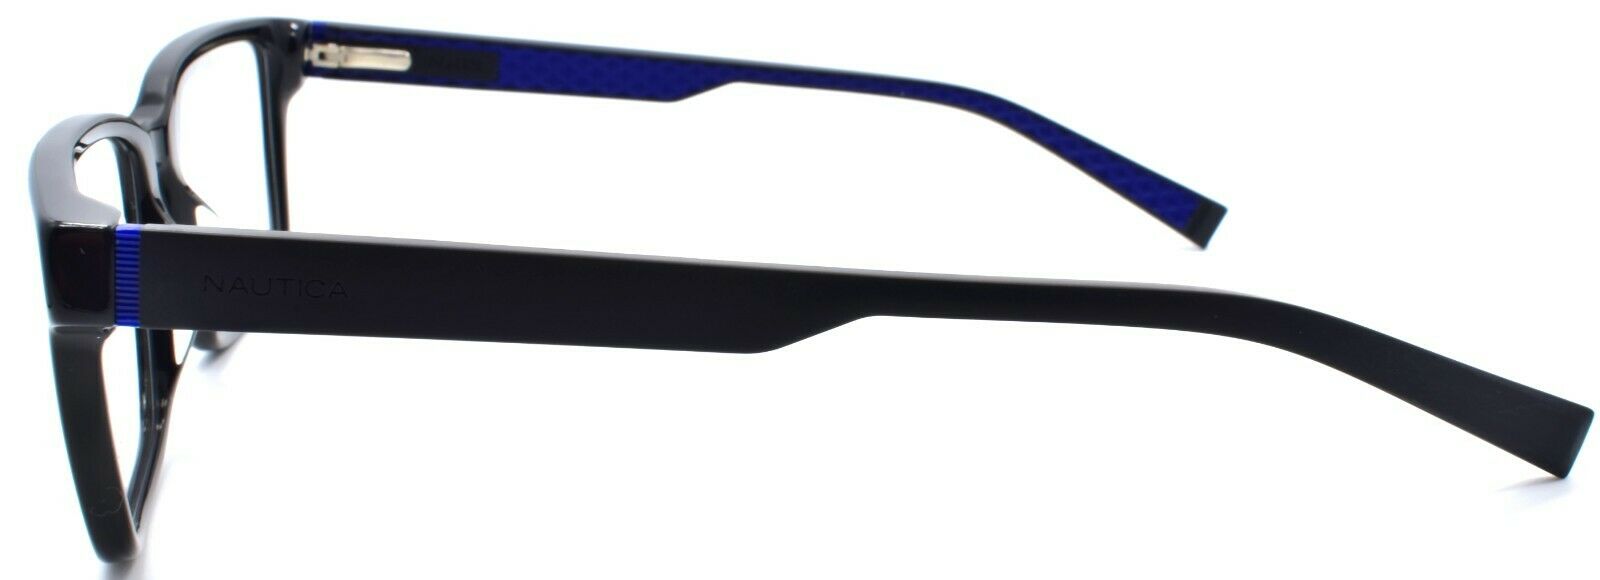 3-Nautica N8156 001 Men's Eyeglasses Frames 56-17-145 Black-688940463880-IKSpecs